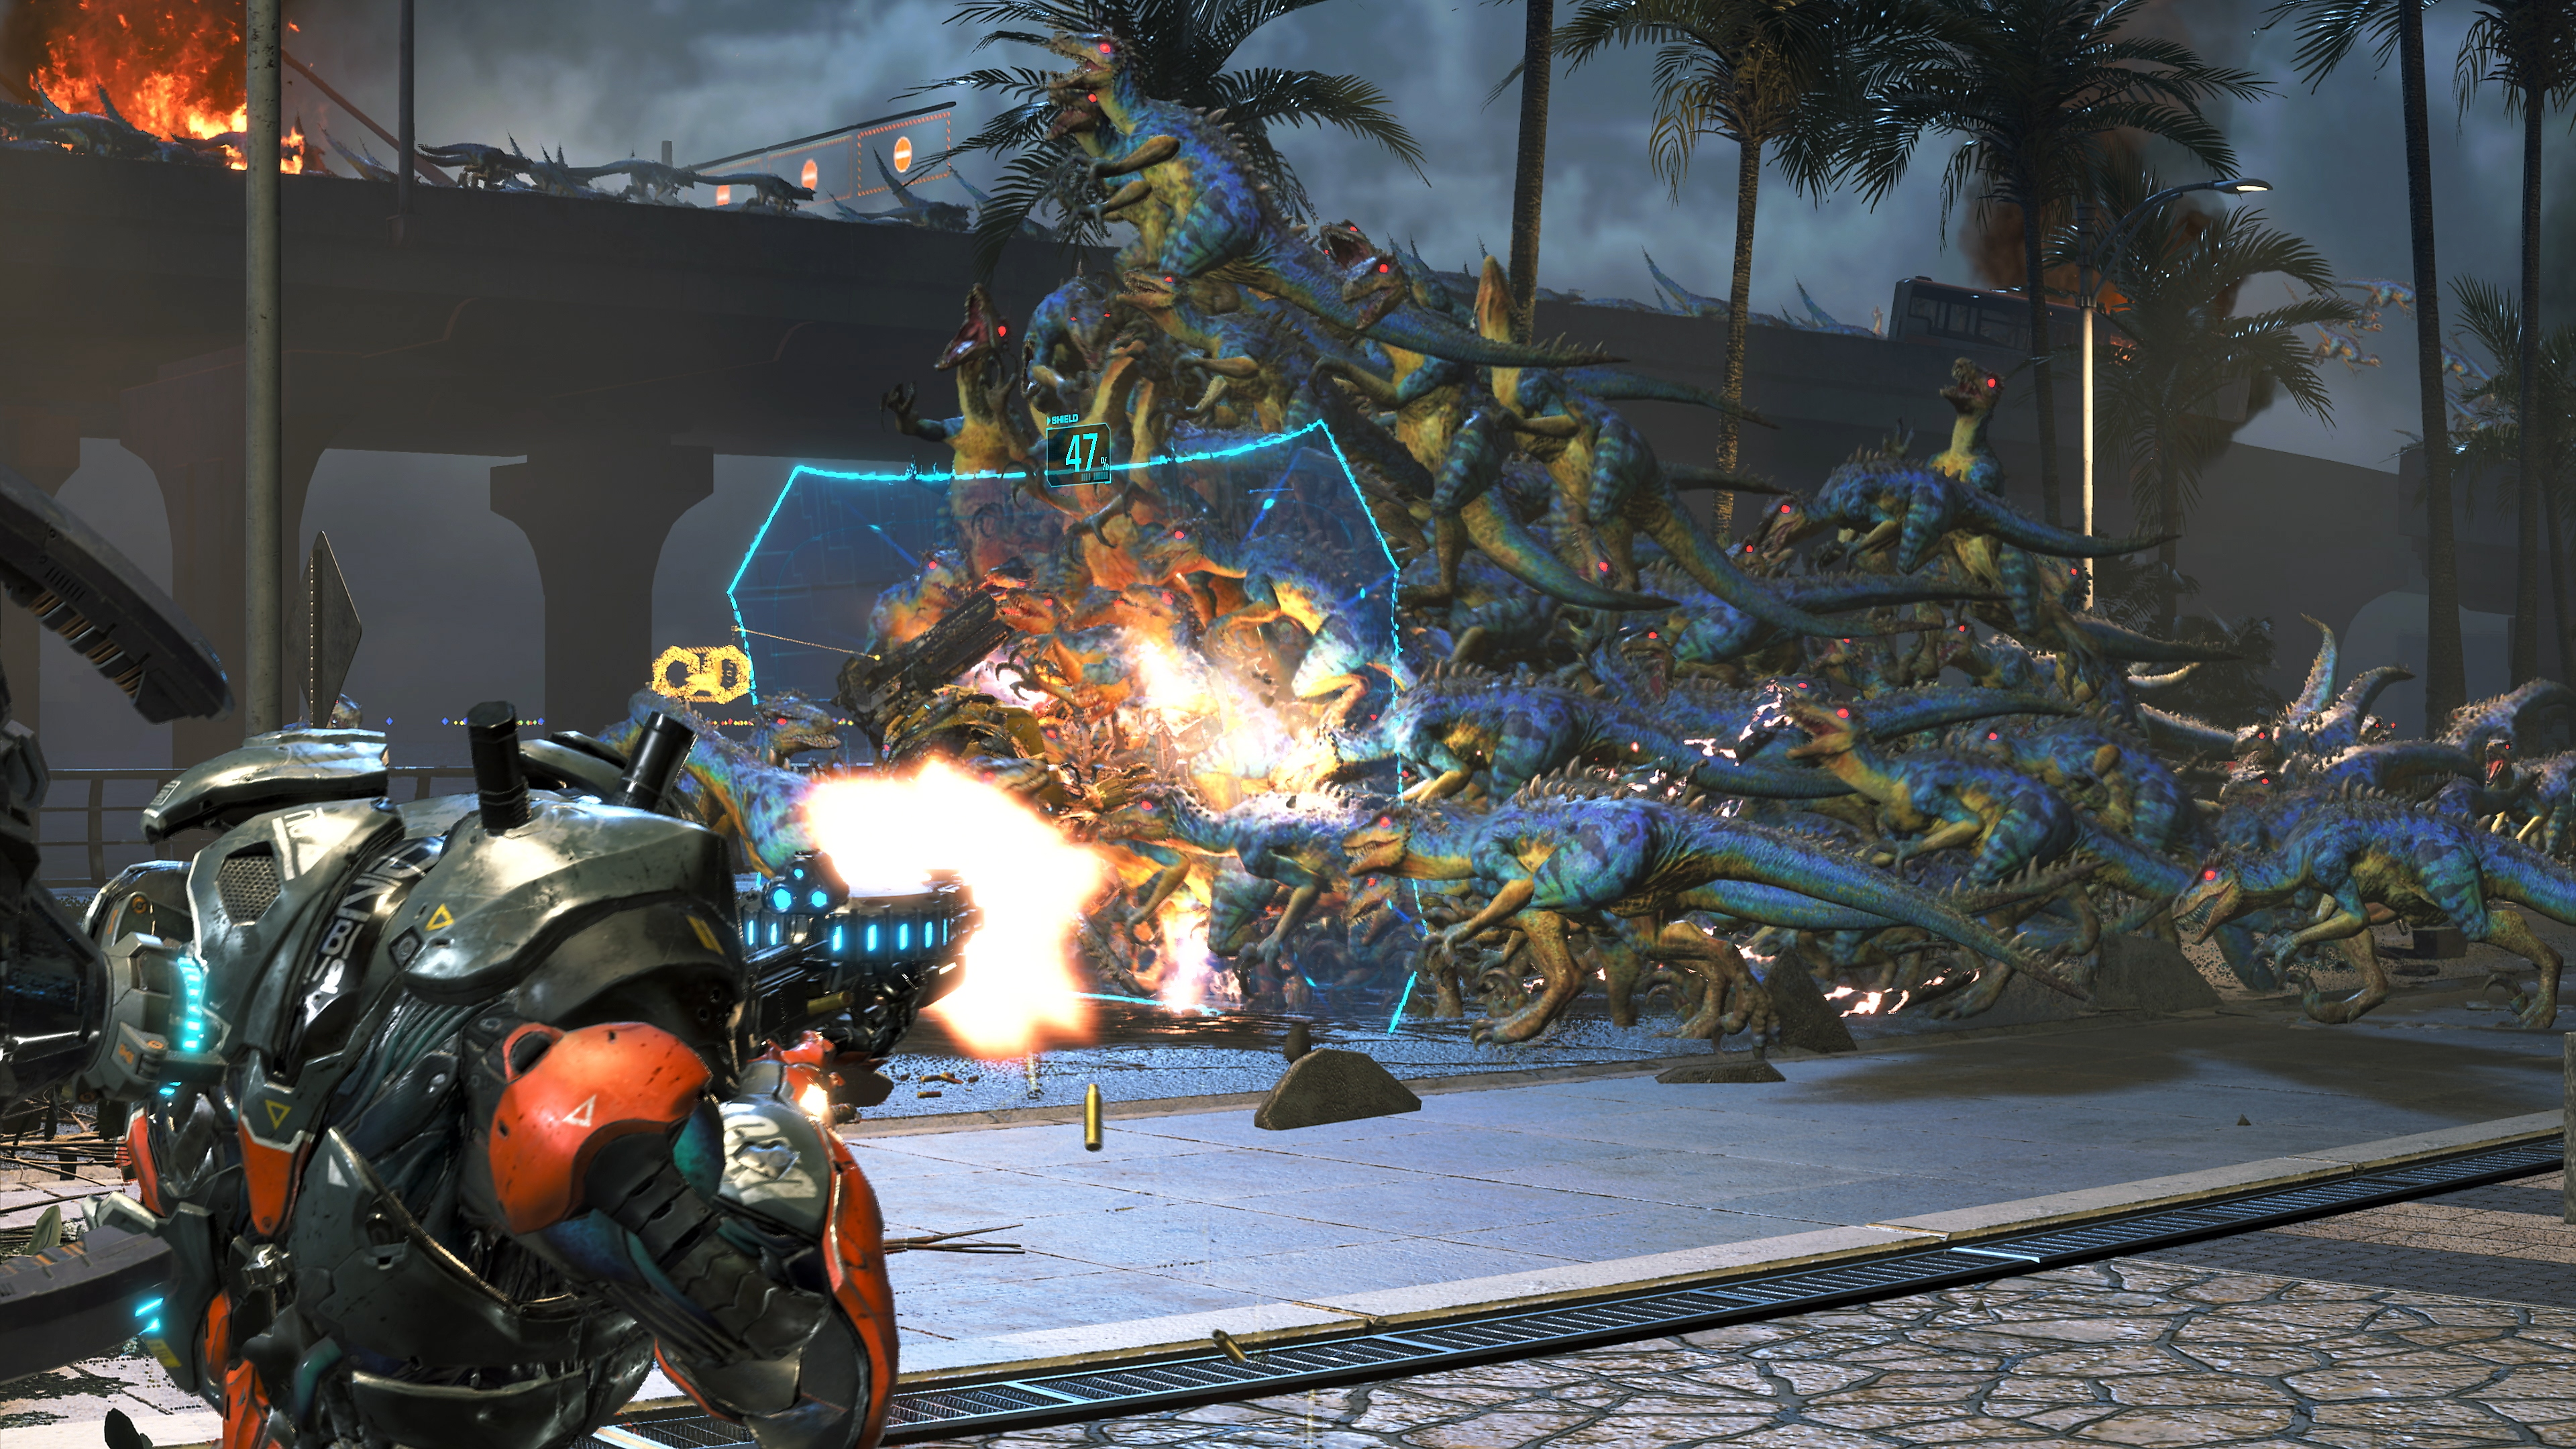 Captura de pantalla de Exoprimal que muestra una horda de dinosarios azules y amarillos corriendo hacia una barrera mientras un personaje les dispara con un arma